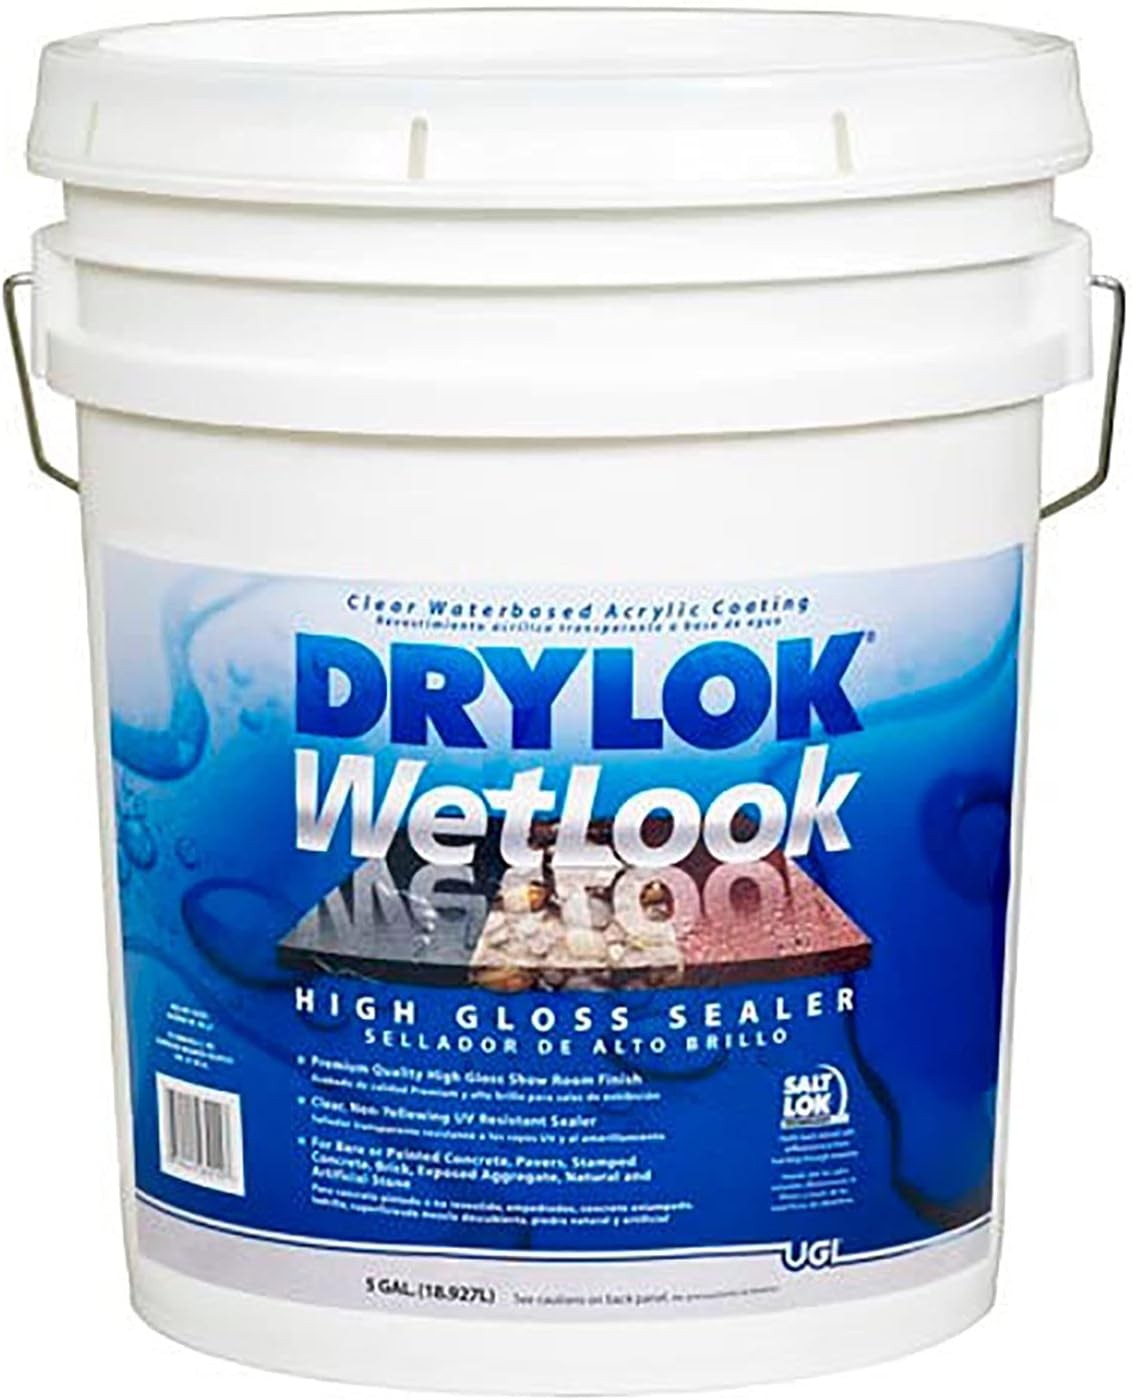 19 ltrs. High Gloss Wet look Drylok Sealer